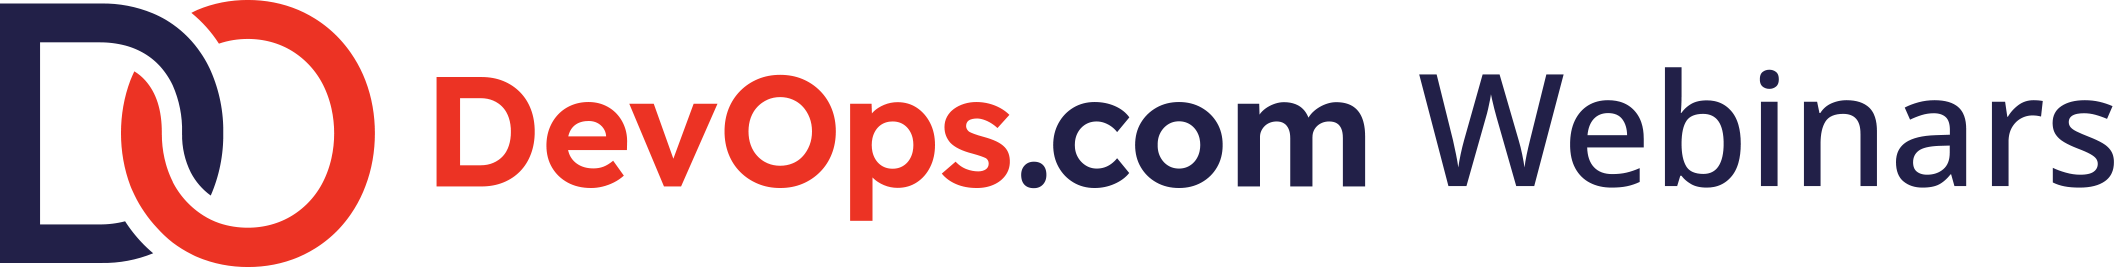 DO.com R+B RGB Webinars Logo-Oct-29-2021-12-59-27-71-AM